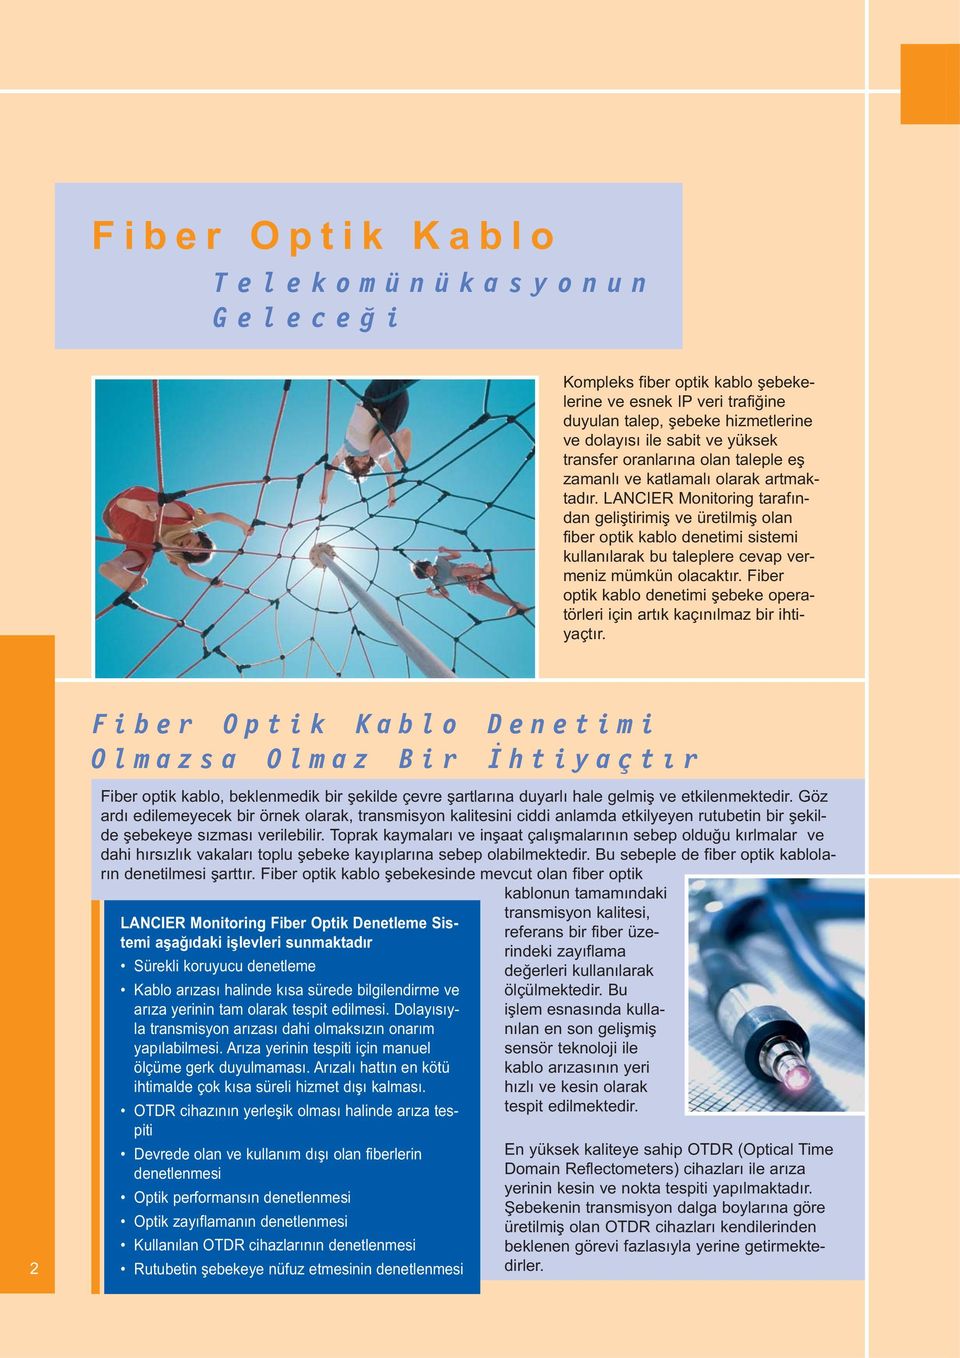 LANCIER Monitoring tarafından geliştirimiş ve üretilmiş olan fiber optik kablo denetimi sistemi kullanılarak bu taleplere cevap vermeniz mümkün olacaktır.